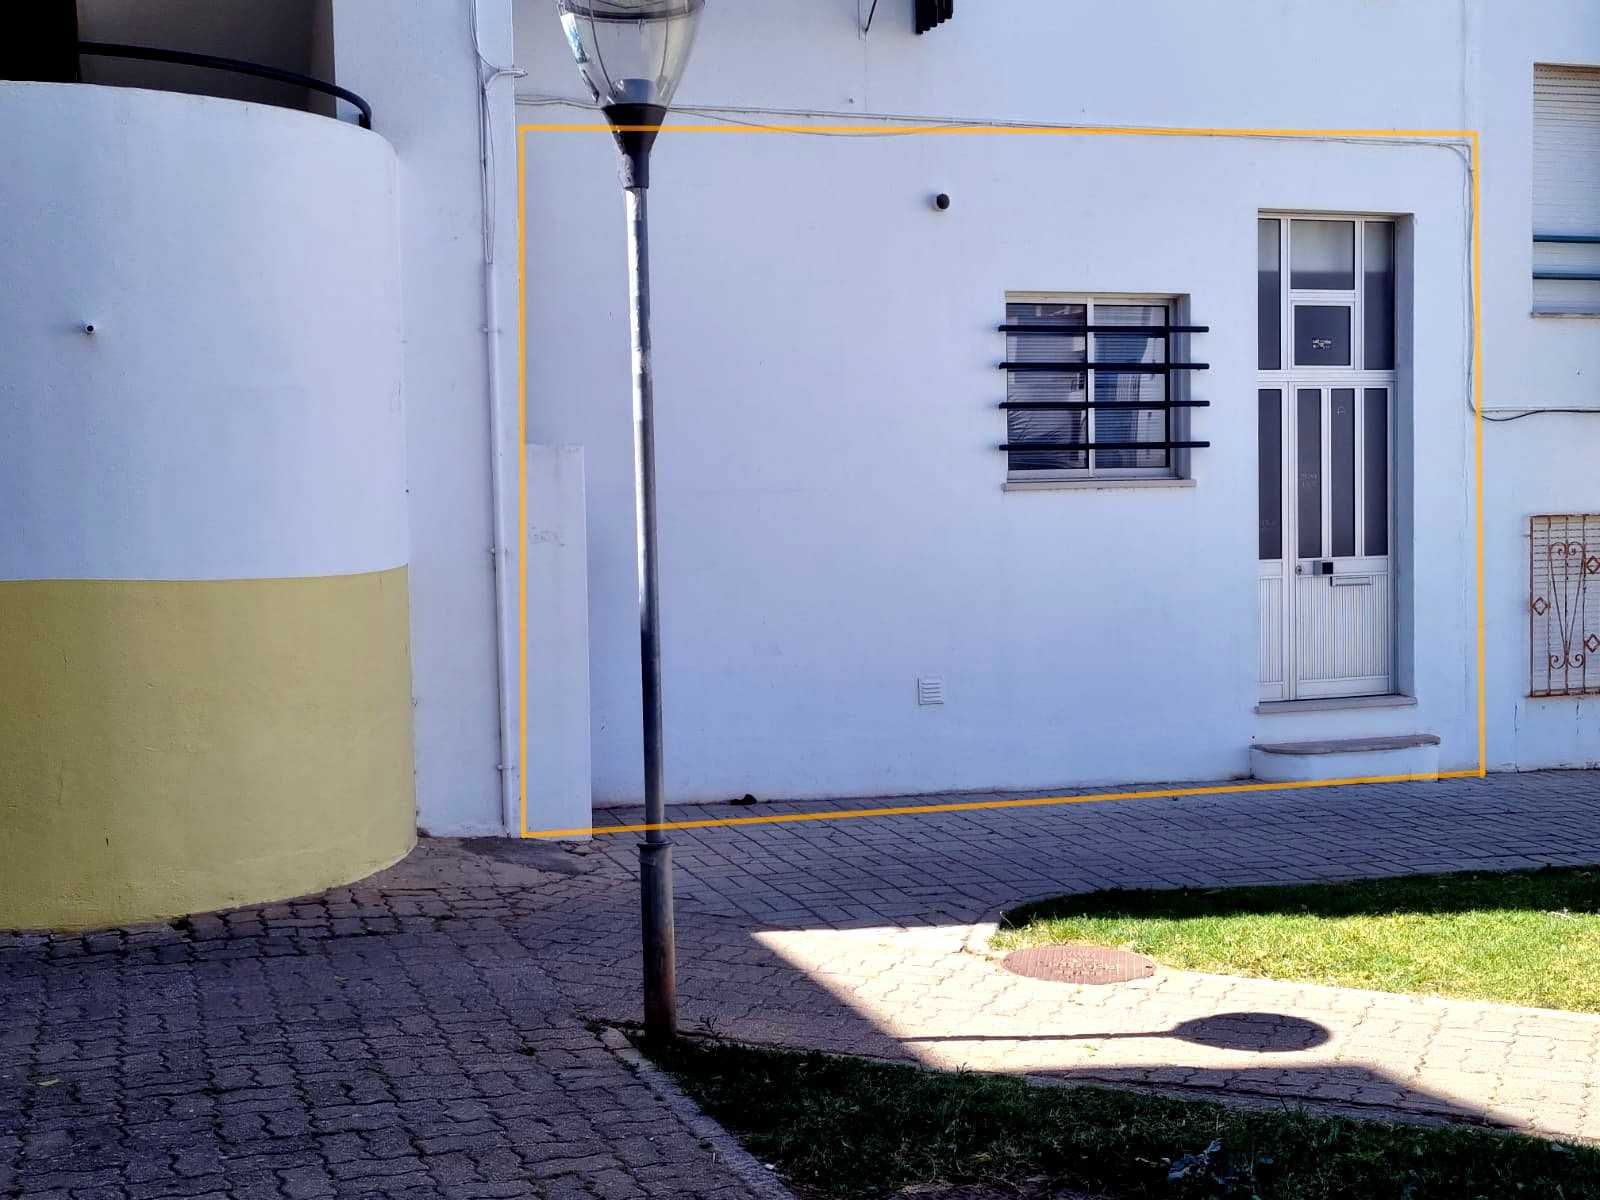 Loja para arrendamento em Lagoa 147m2 rês-do-chão, comércio e serviços